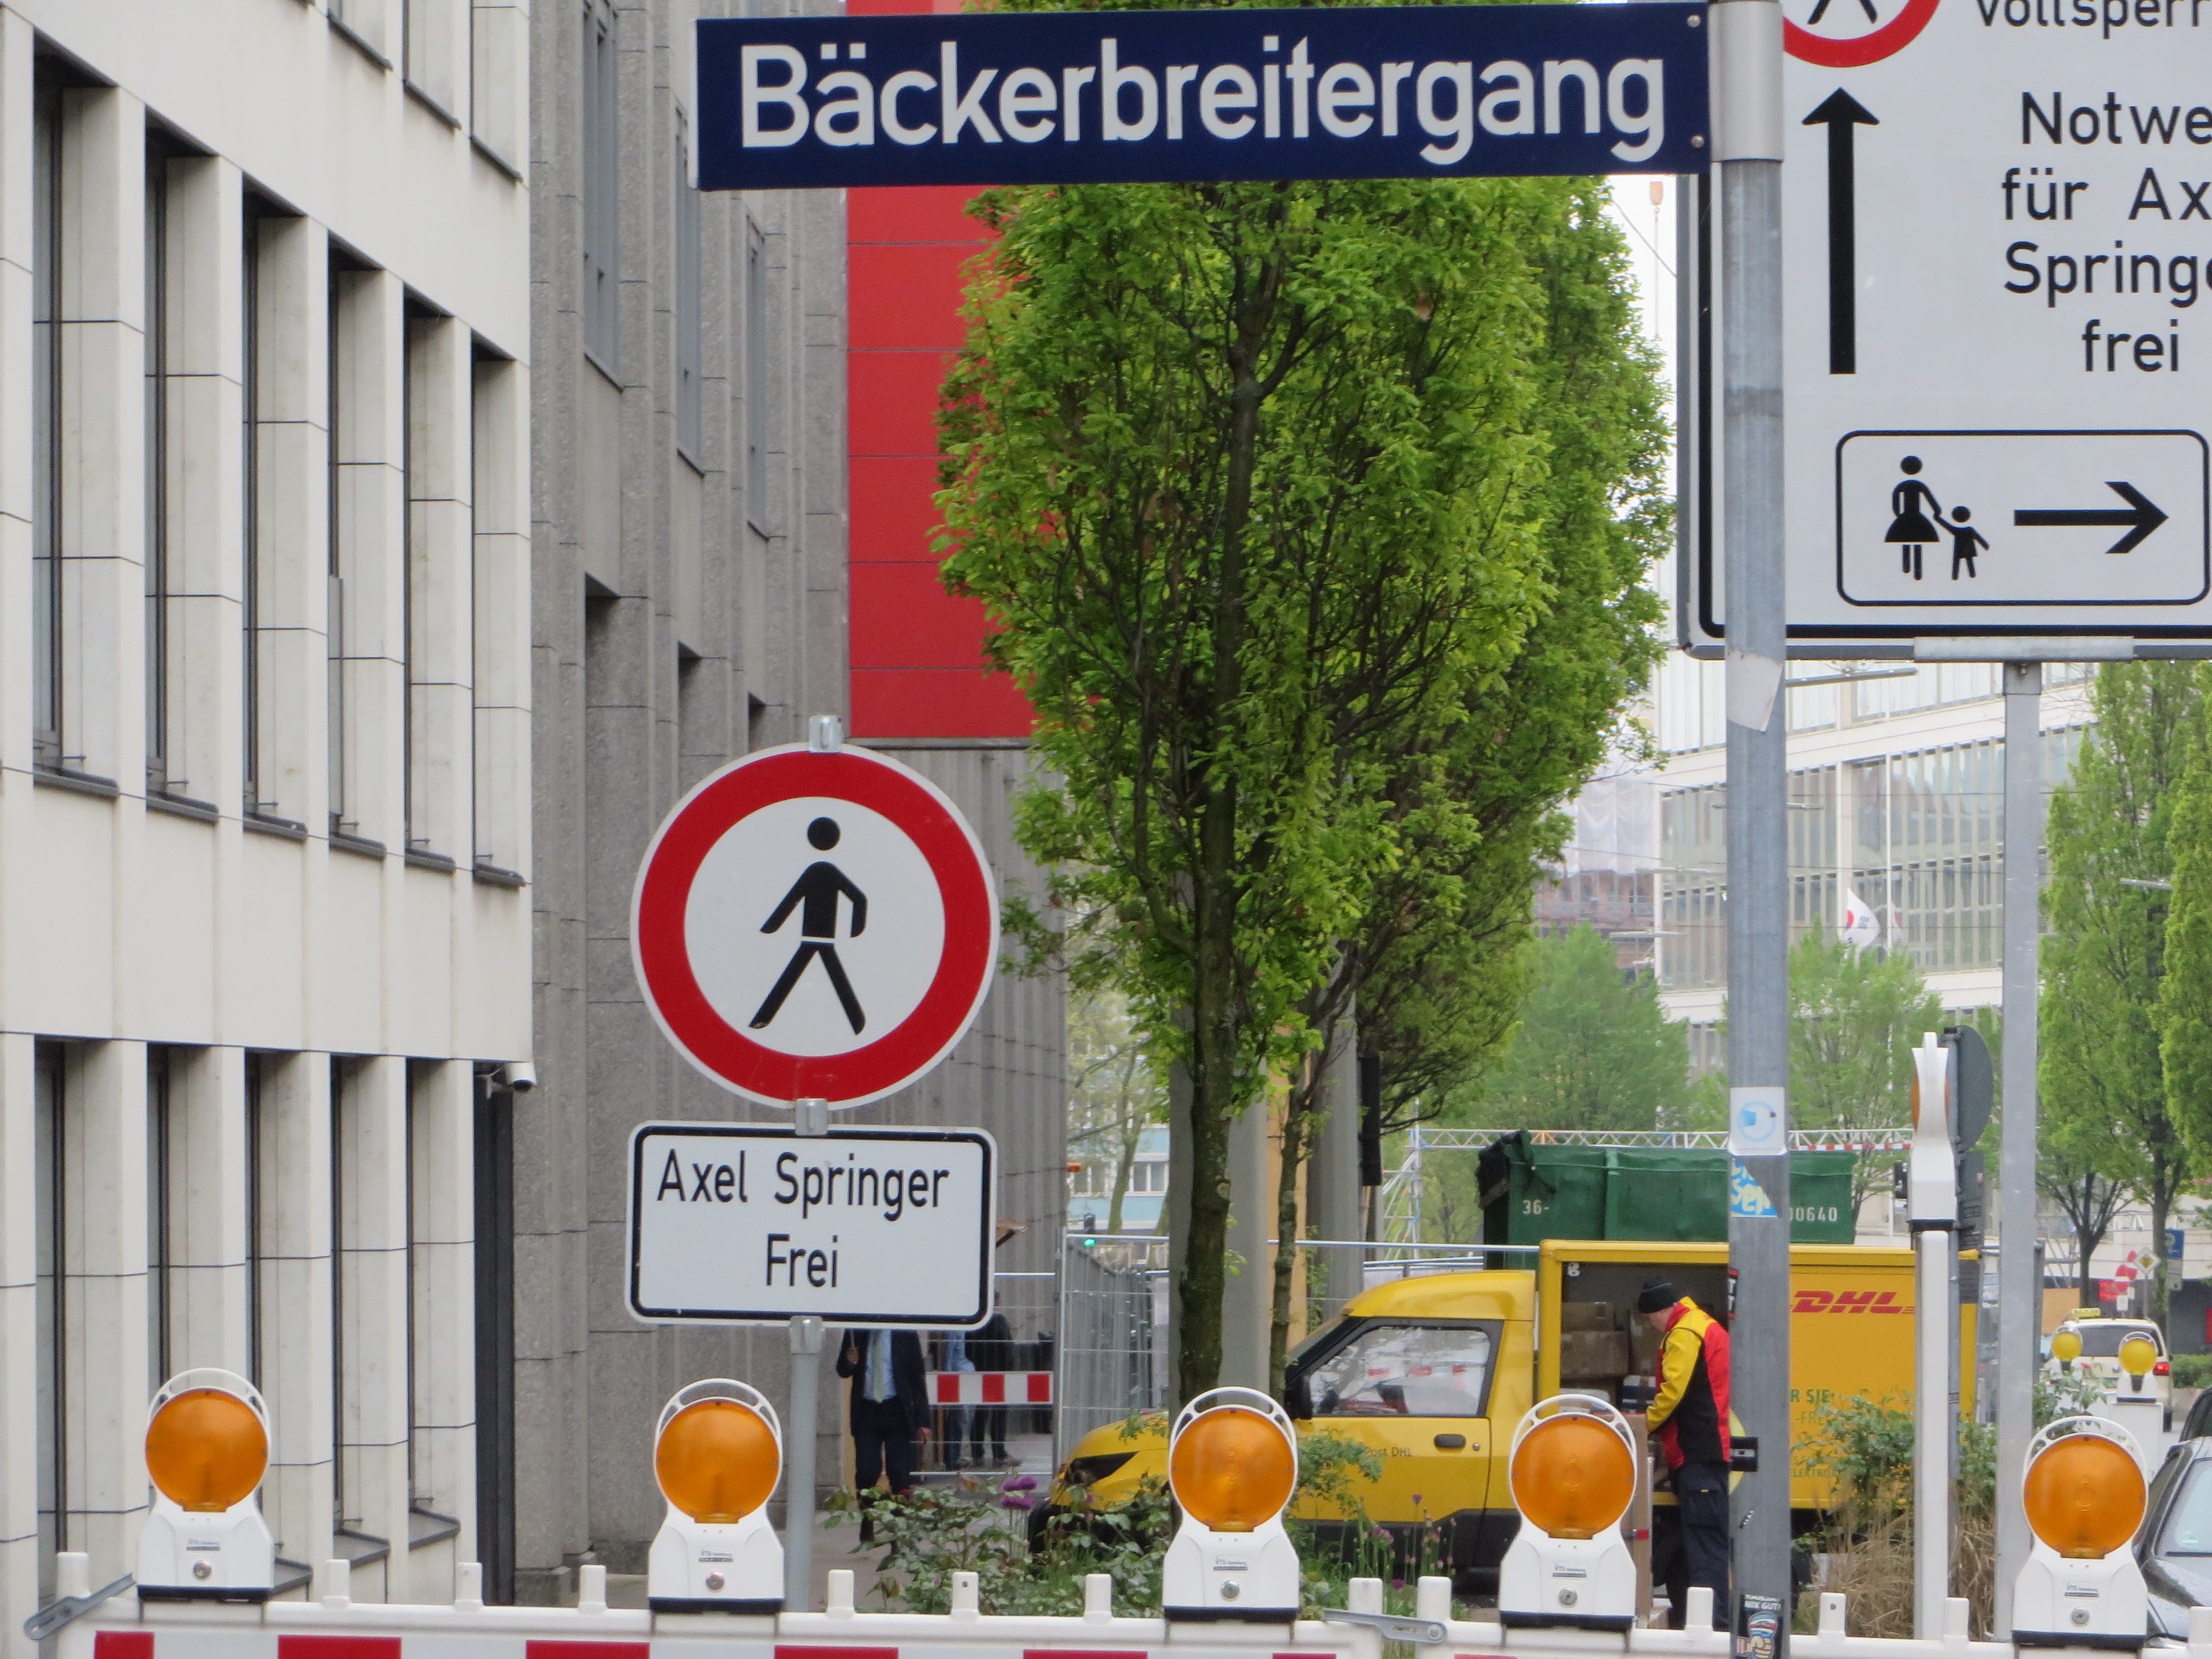 Axel Springer ist frei  Hamburg Bäckerbreitergang